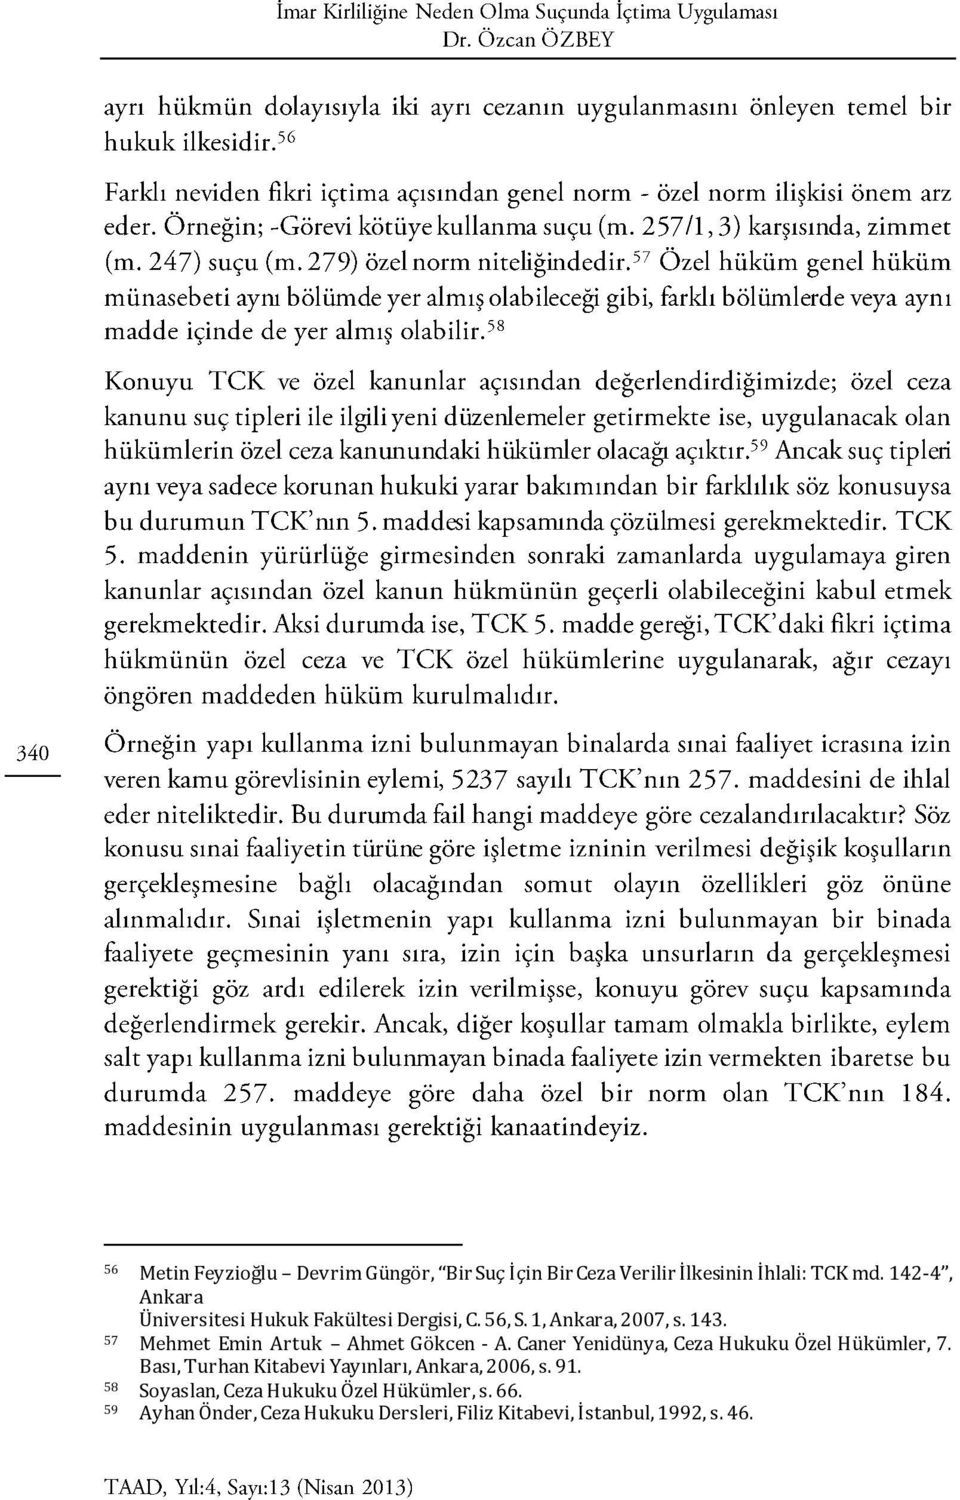 57 Mehmet Emin Artuk Ahmet Gökcen - A. Caner Yenidünya, Ceza Hukuku Özel Hükümler, 7.